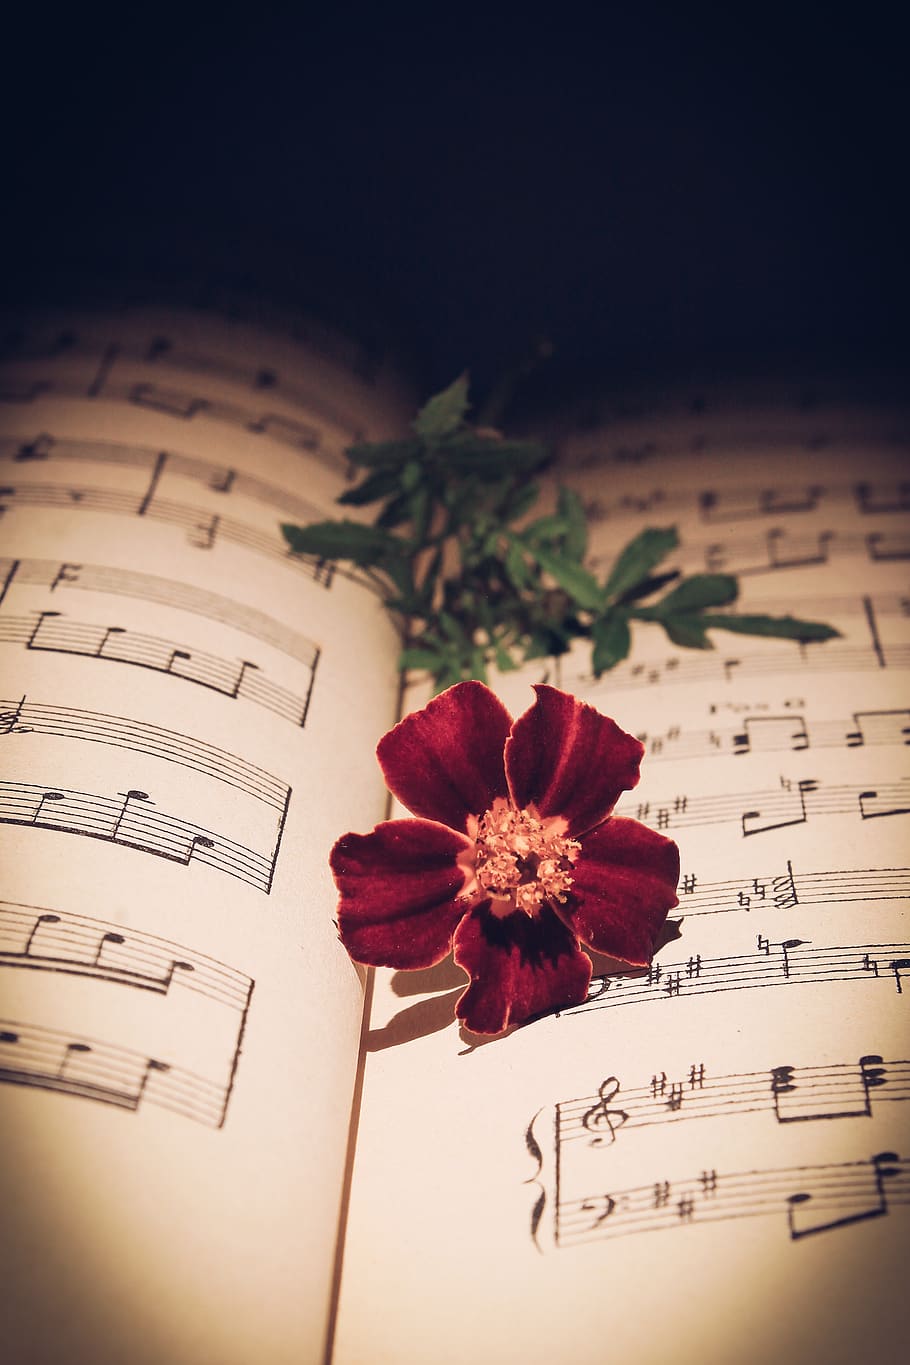 nota musical, rosa roja, rosa, flor roja, flor, romántico, vida, naturaleza, clavel, manuscrito